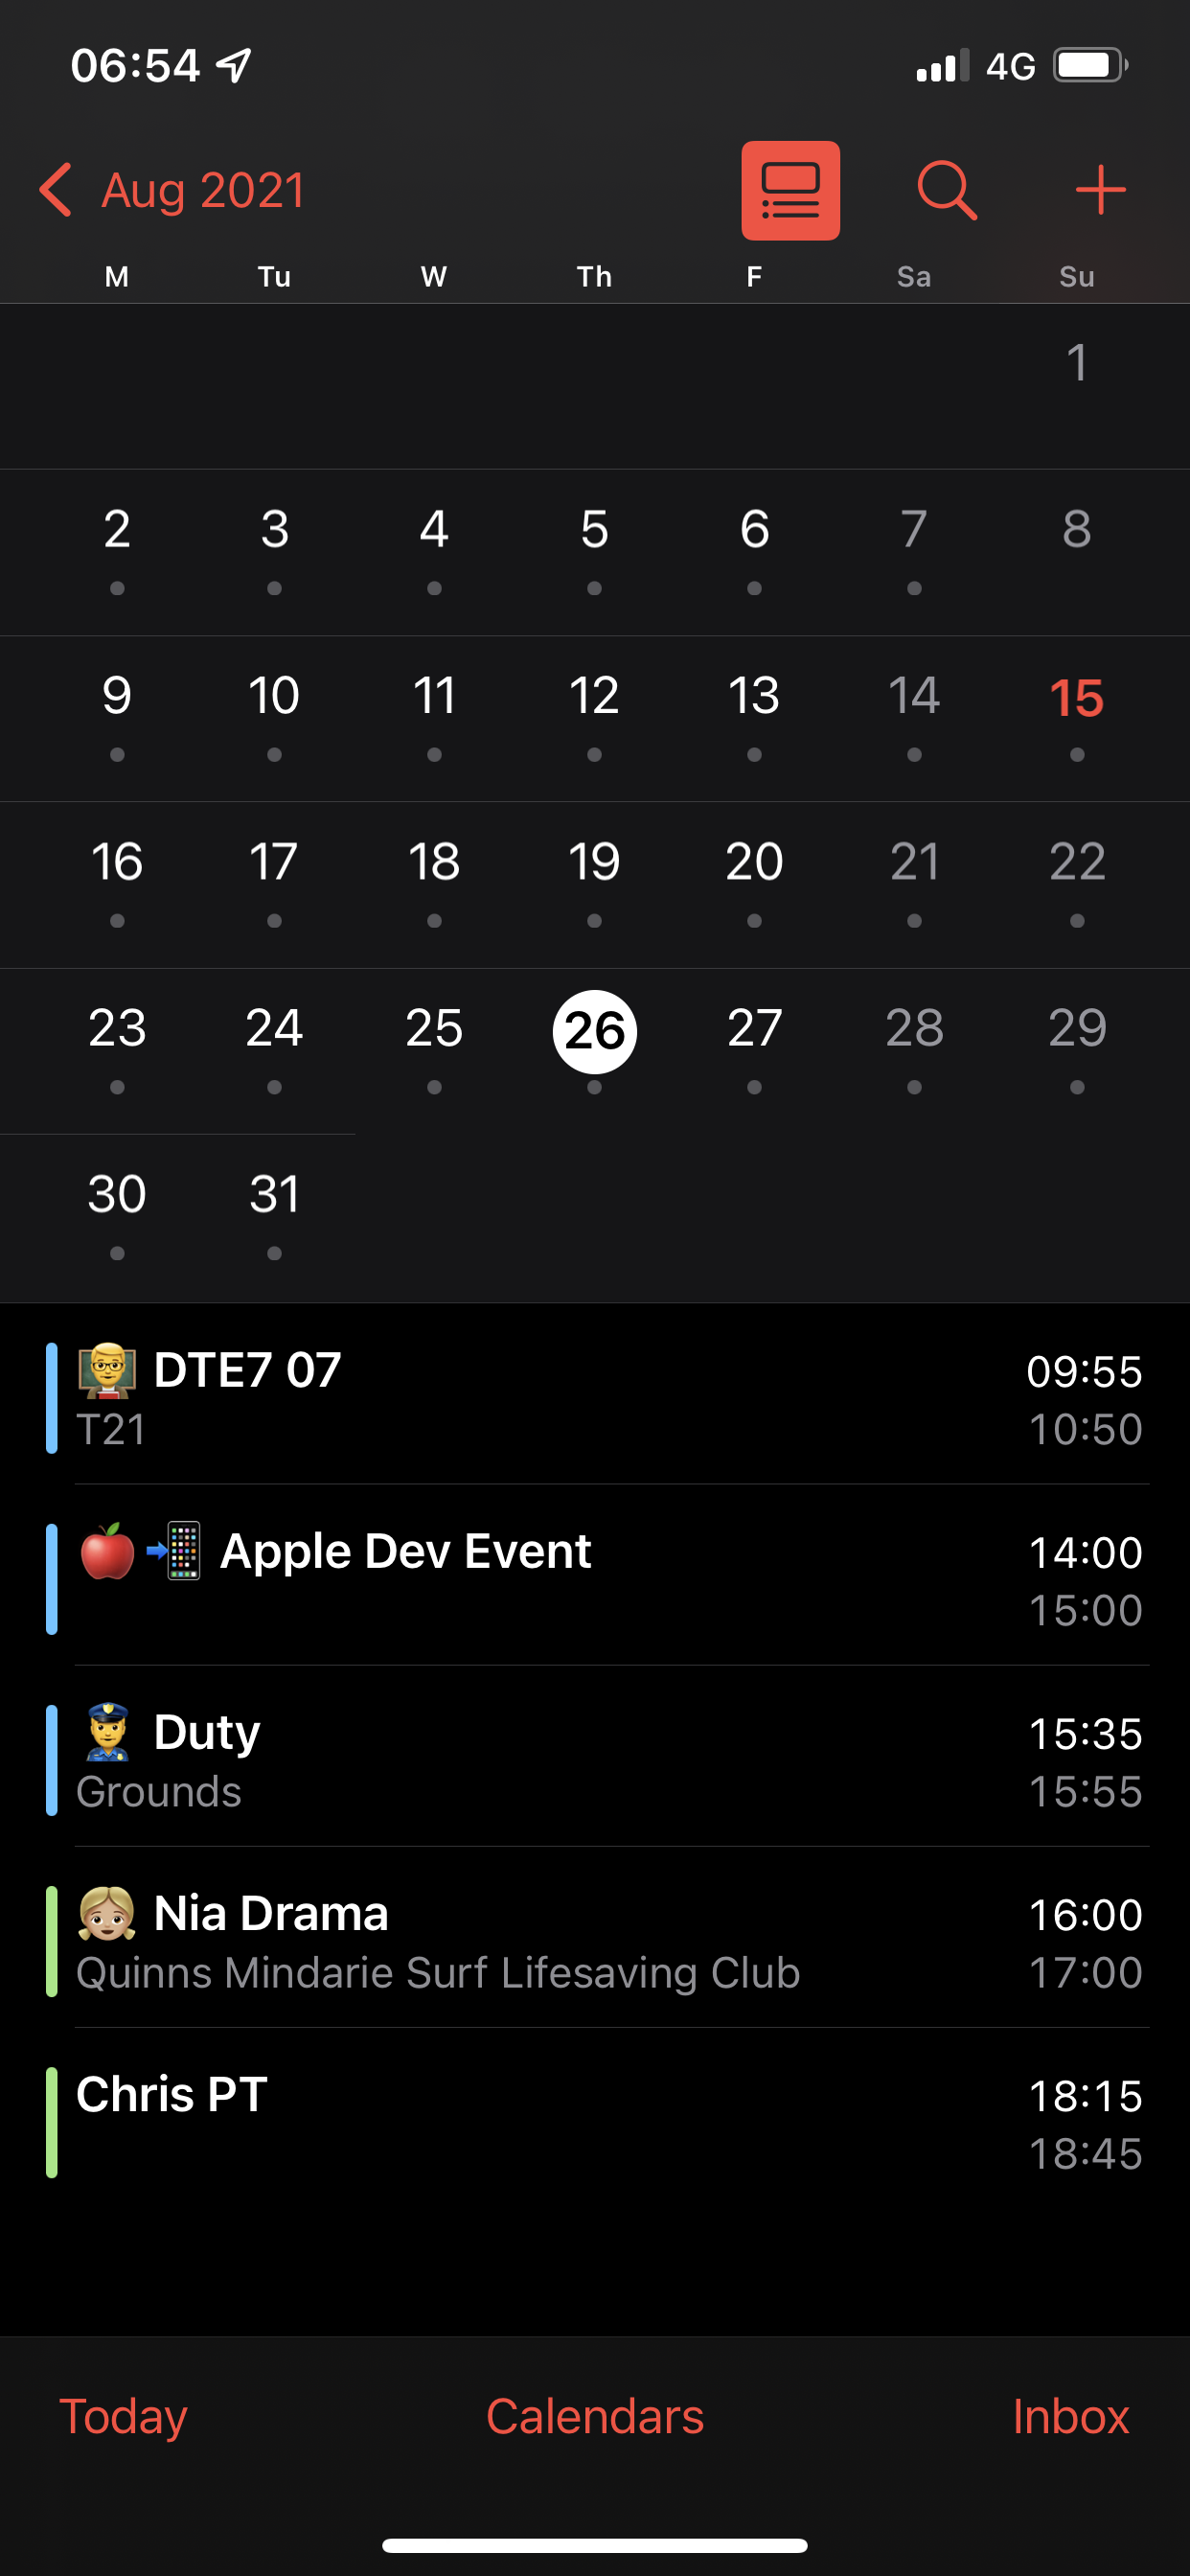 Using emoji in calendar event names